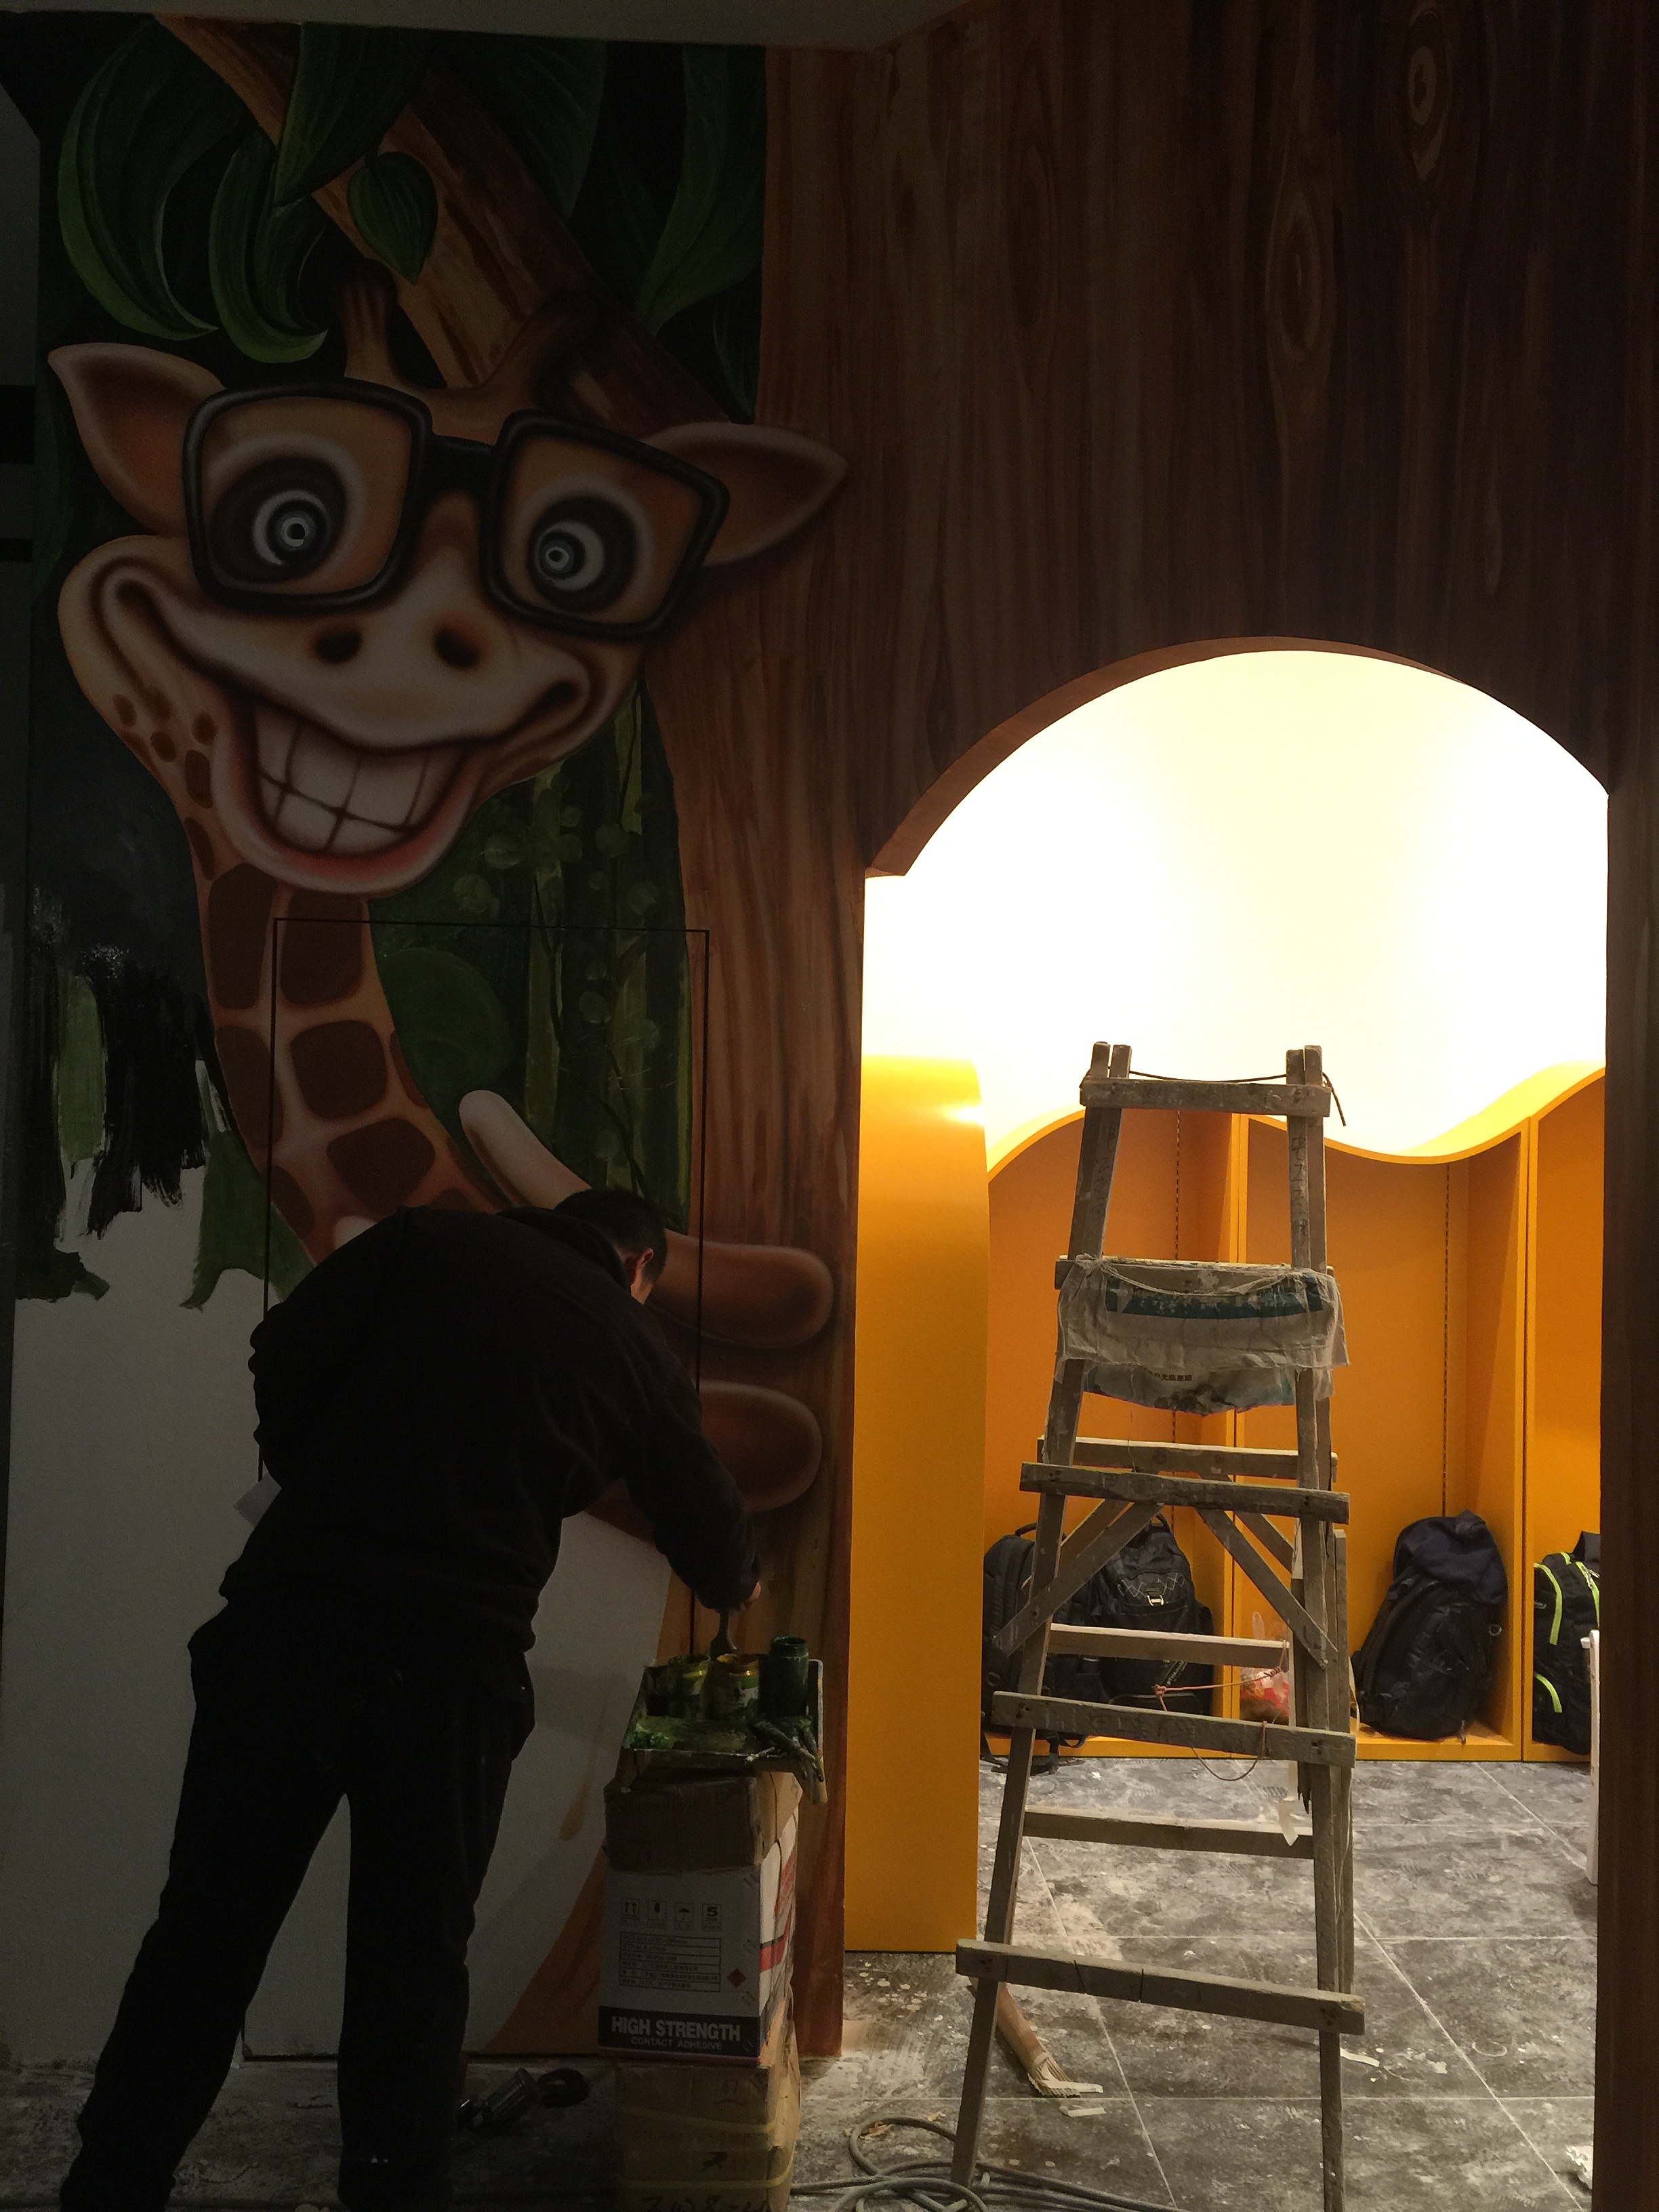 银泰中心儿童乐园3D森林主题墙绘立体画现场